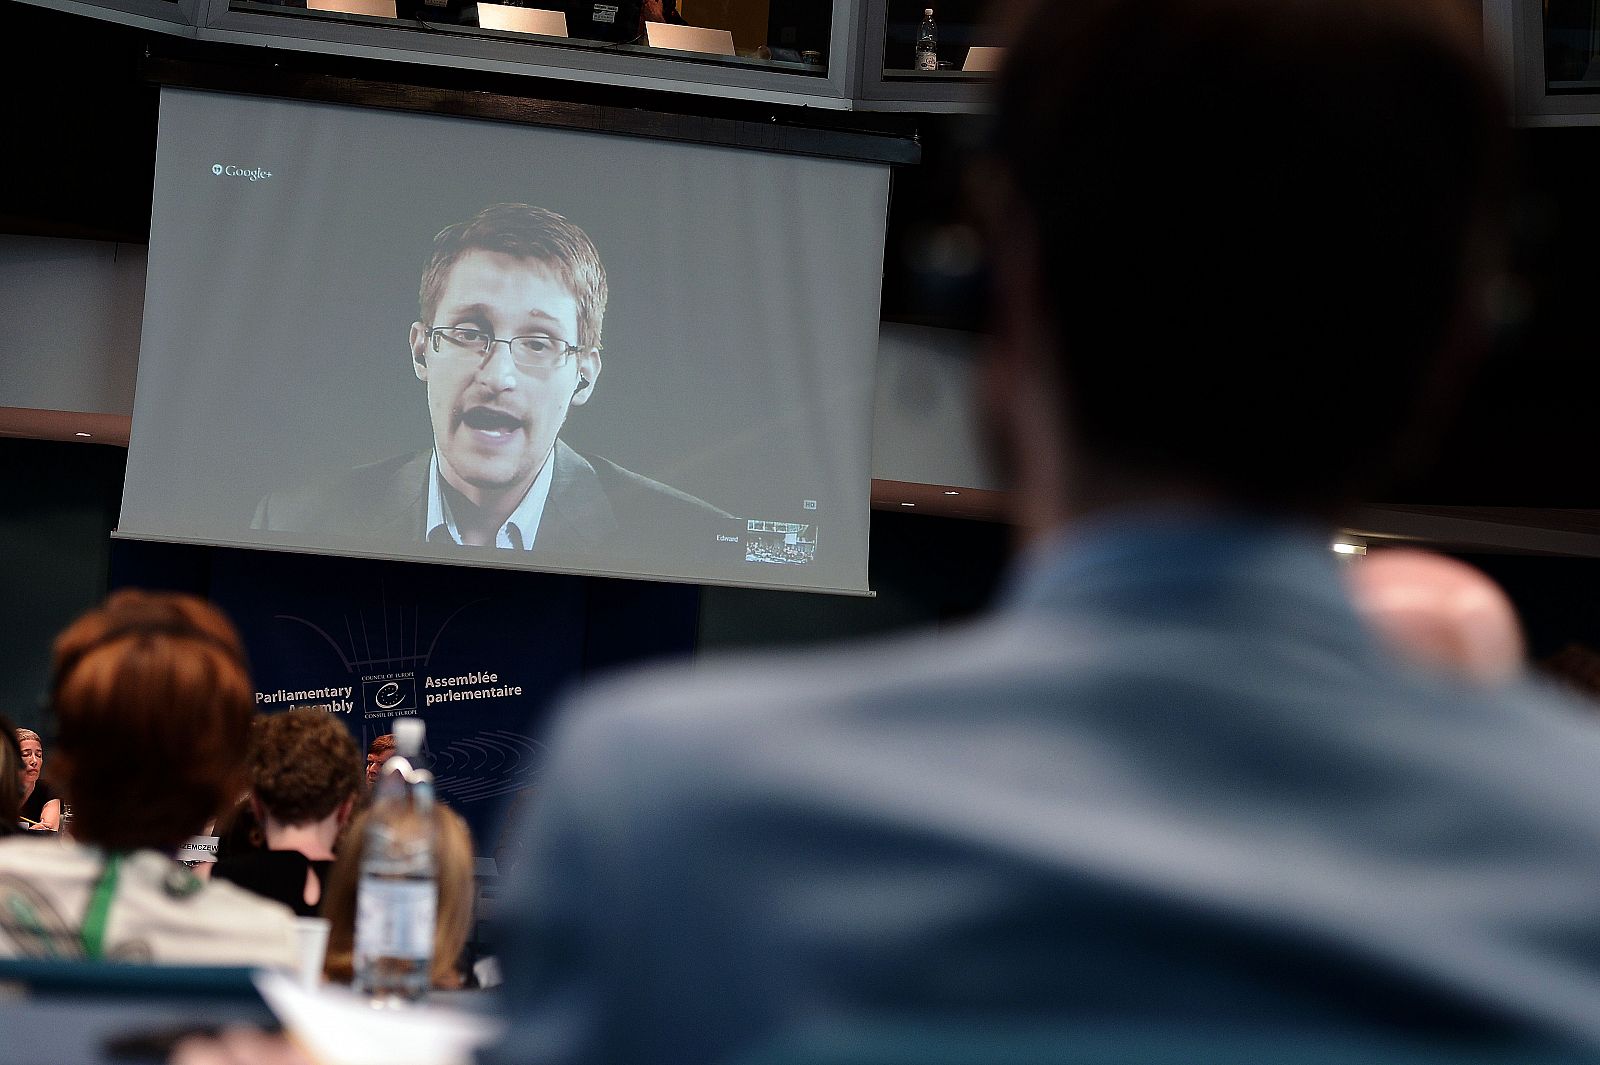 El exagente de la CIA Edward Snowden habla por videoconferencia durante una sesión del Consejo de Europa, el 24 de junio de 2014